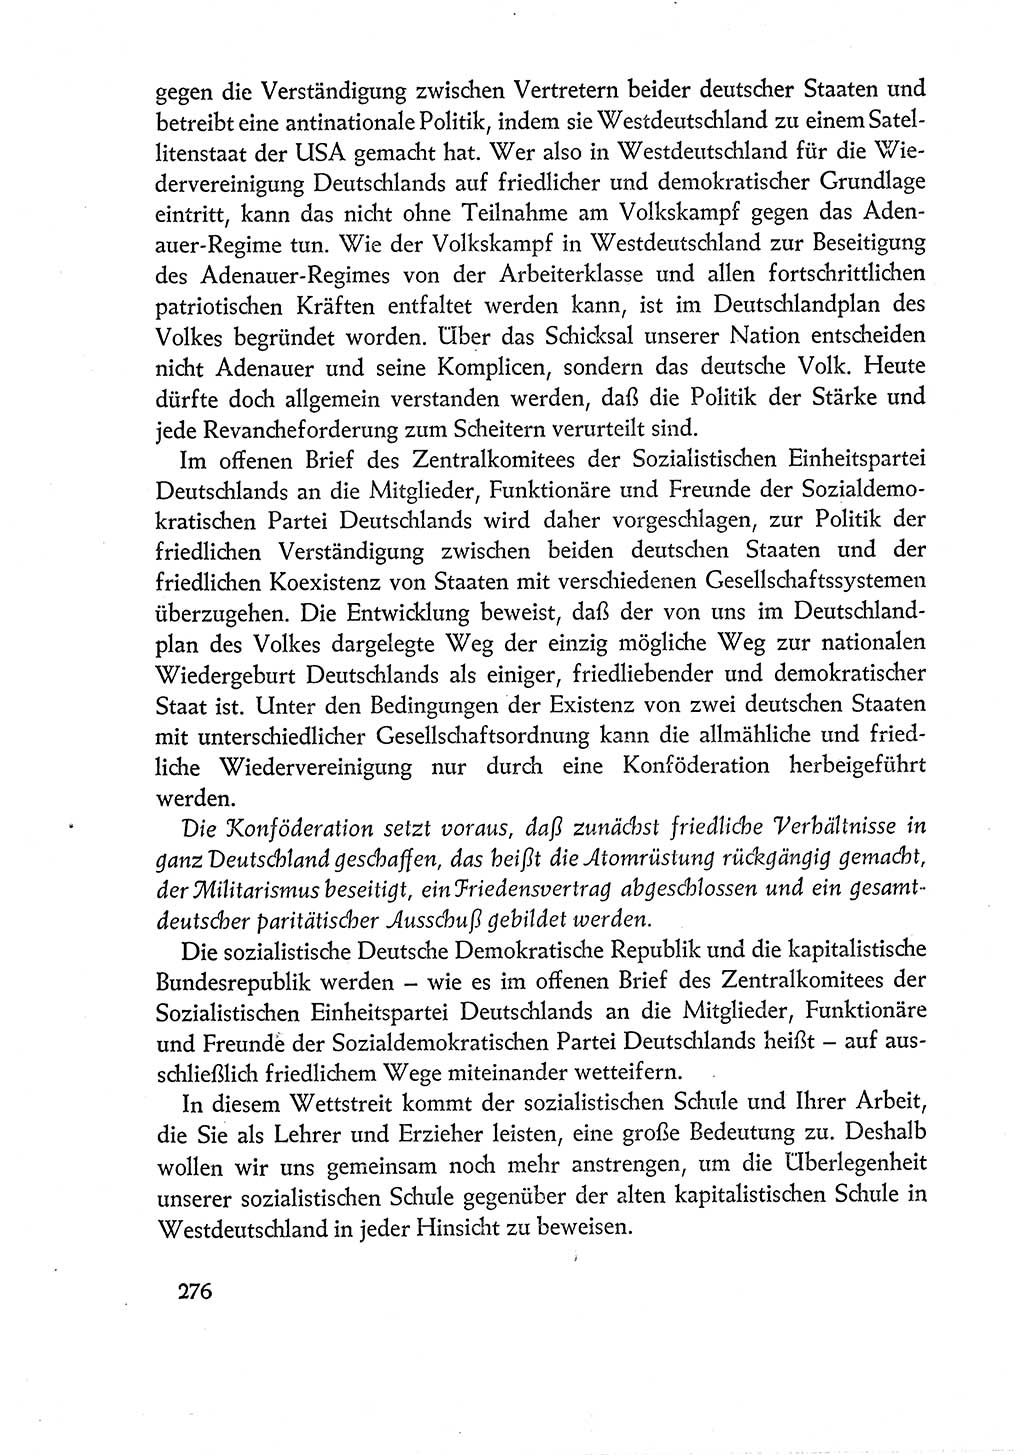 Dokumente der Sozialistischen Einheitspartei Deutschlands (SED) [Deutsche Demokratische Republik (DDR)] 1960-1961, Seite 276 (Dok. SED DDR 1960-1961, S. 276)